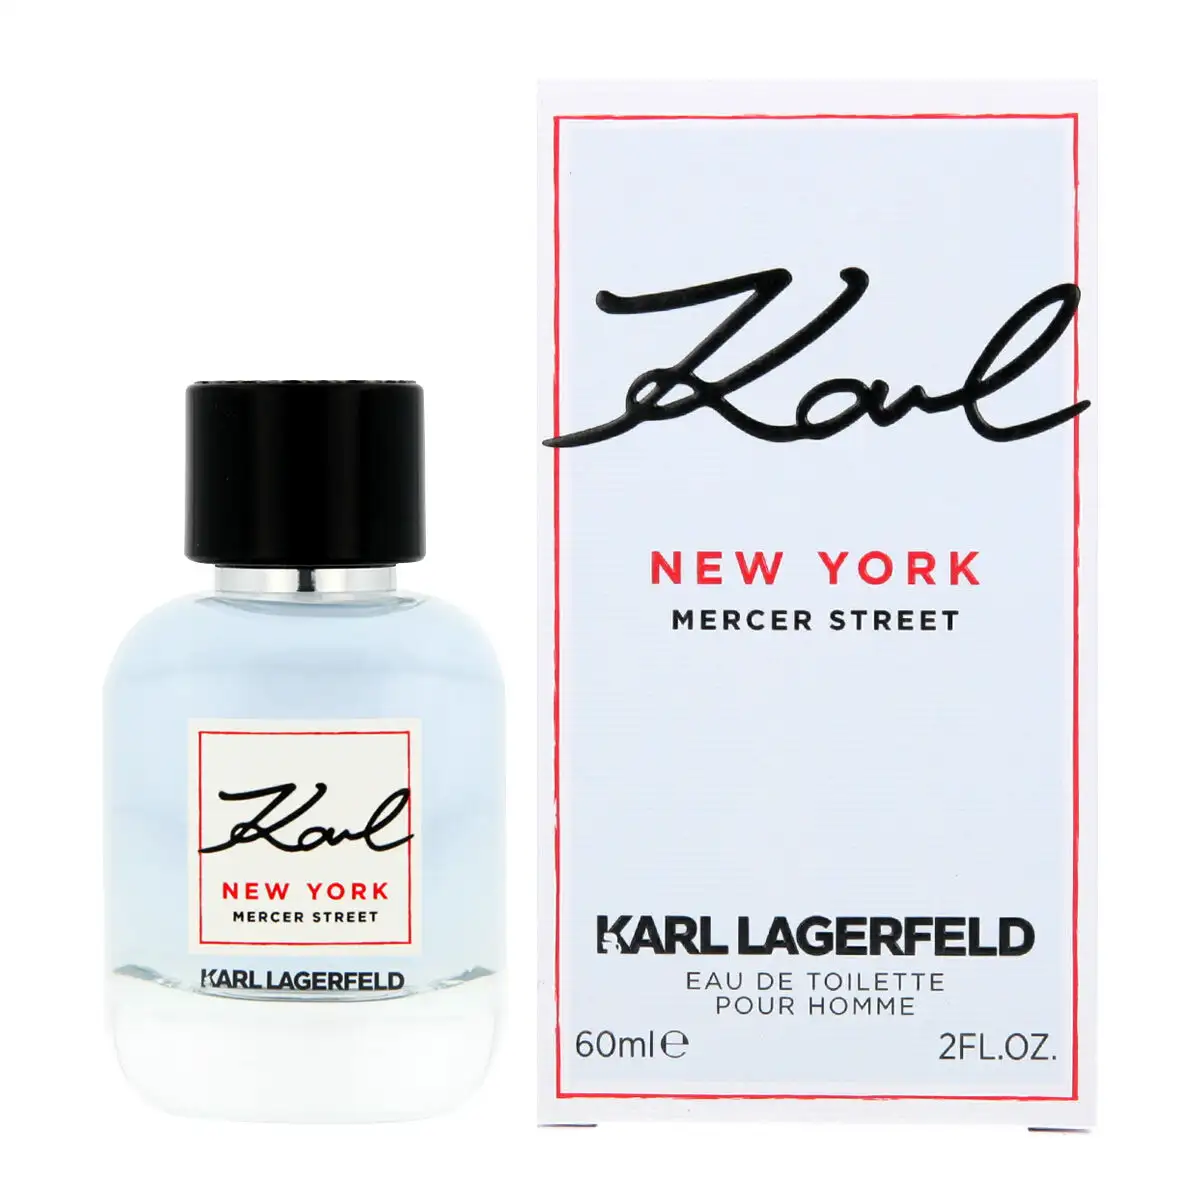 Parfum homme edt karl lagerfeld karl new york mercer street 60 ml_9148. DIAYTAR SENEGAL - Là où Chaque Achat a du Sens. Explorez notre gamme et choisissez des produits qui racontent une histoire, votre histoire.